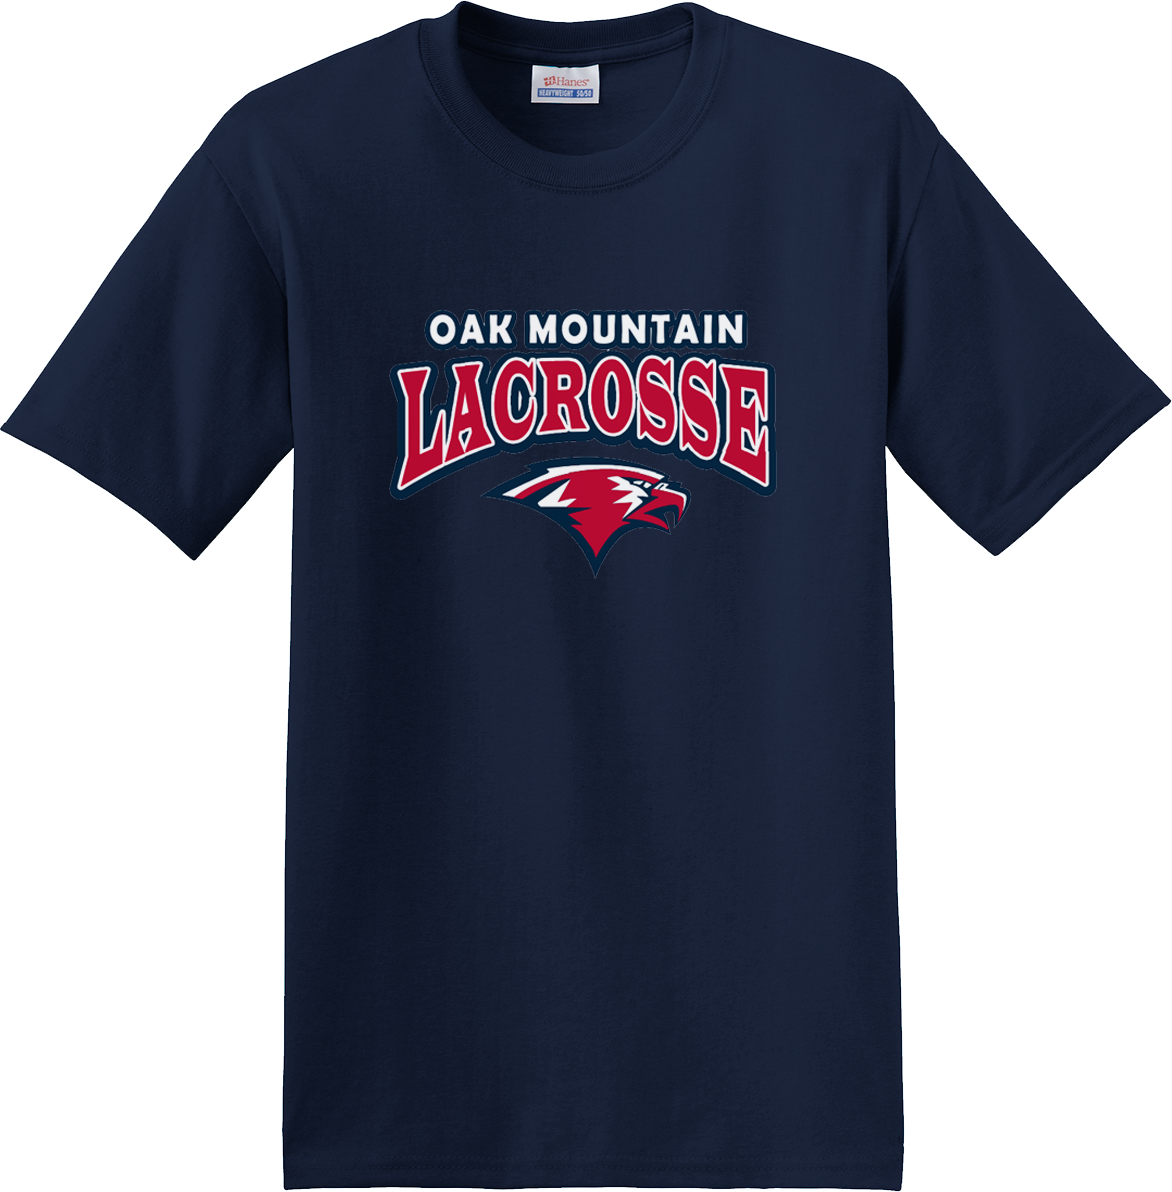 Oak Mtn. Lacrosse Navy T-Shirt